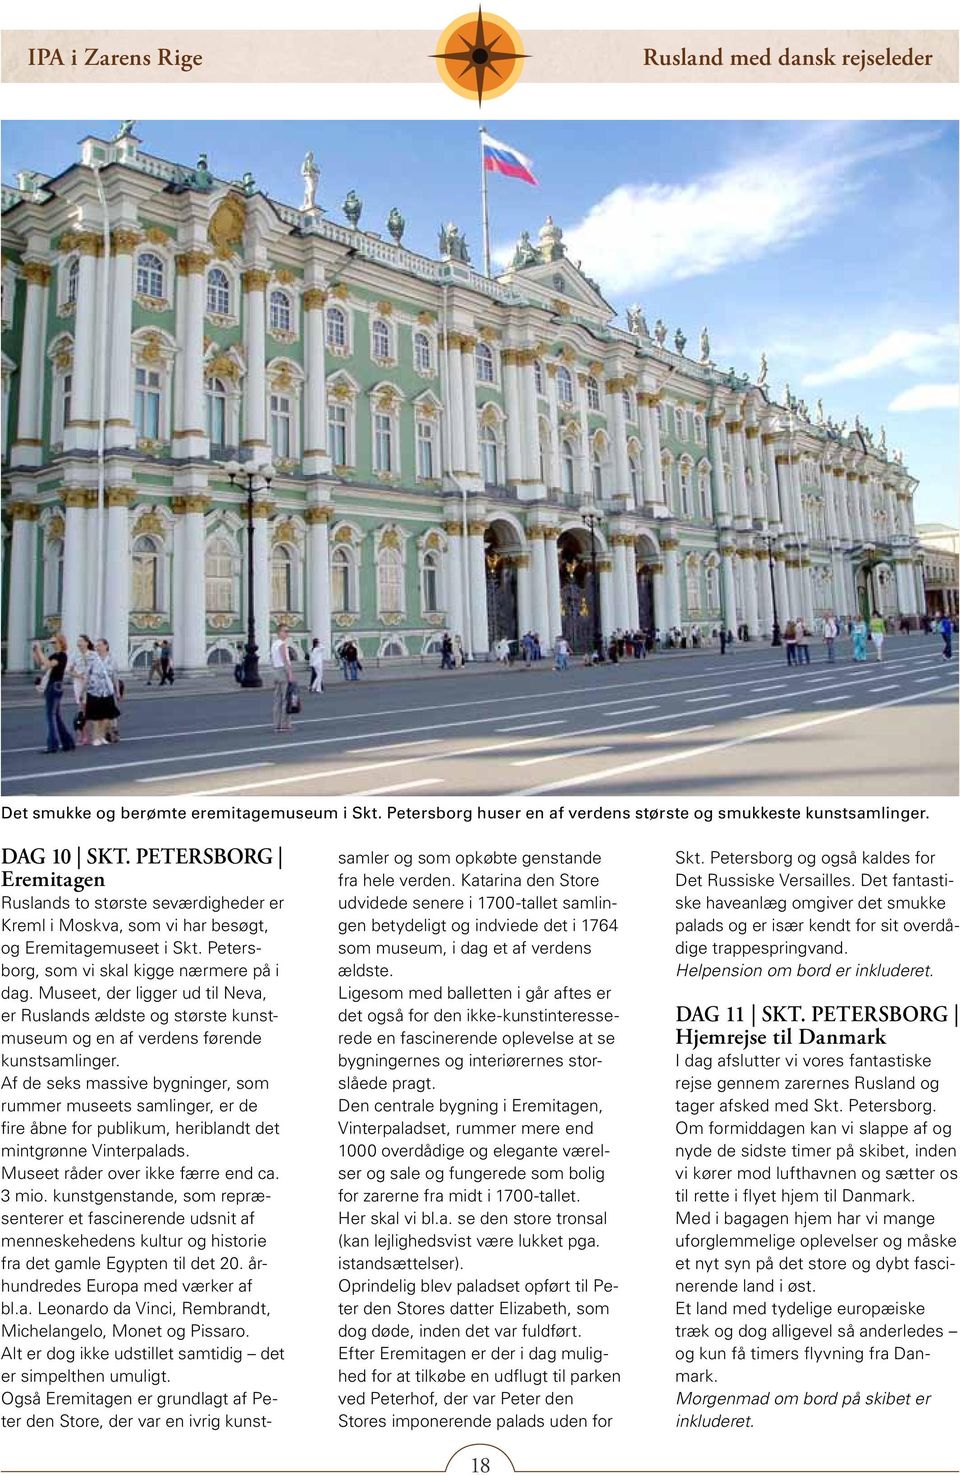 Museet, der ligger ud til Neva, er Ruslands ældste og største kunstmuseum og en af verdens førende kunstsamlinger.